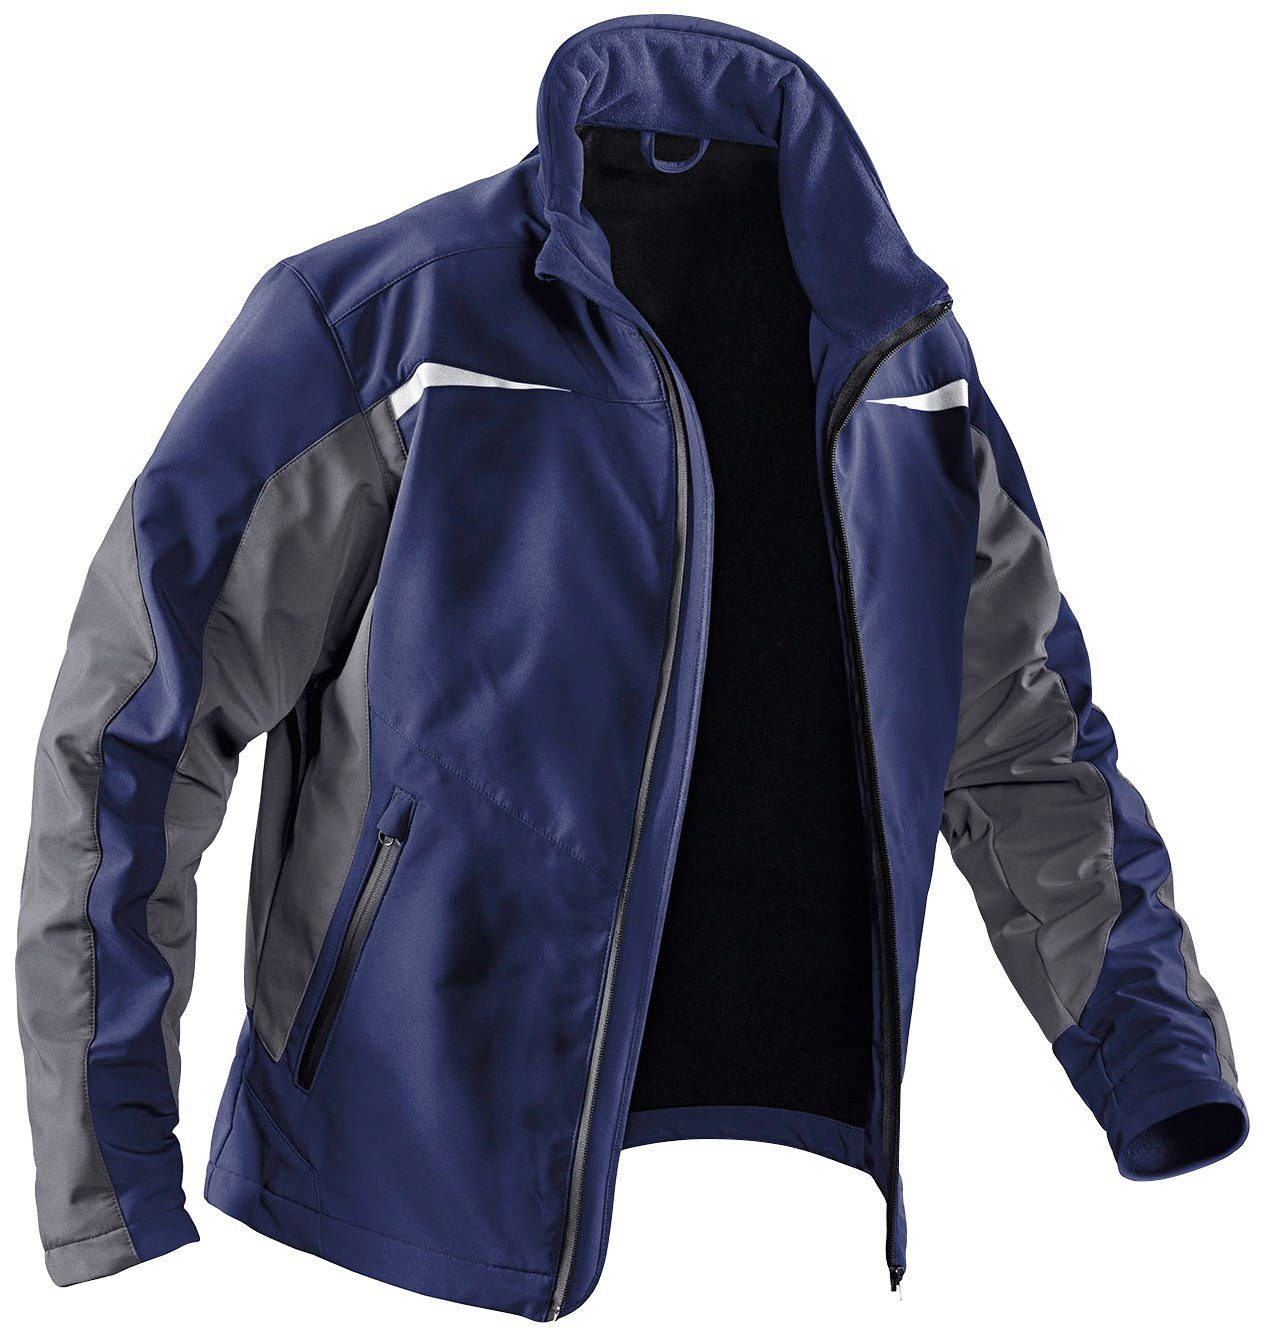 Kübler Arbeitsjacke Softshell Jacke mit 4 Taschen, winddicht, wasserabweisend dunkelblau-anthrazit | Windbreakers